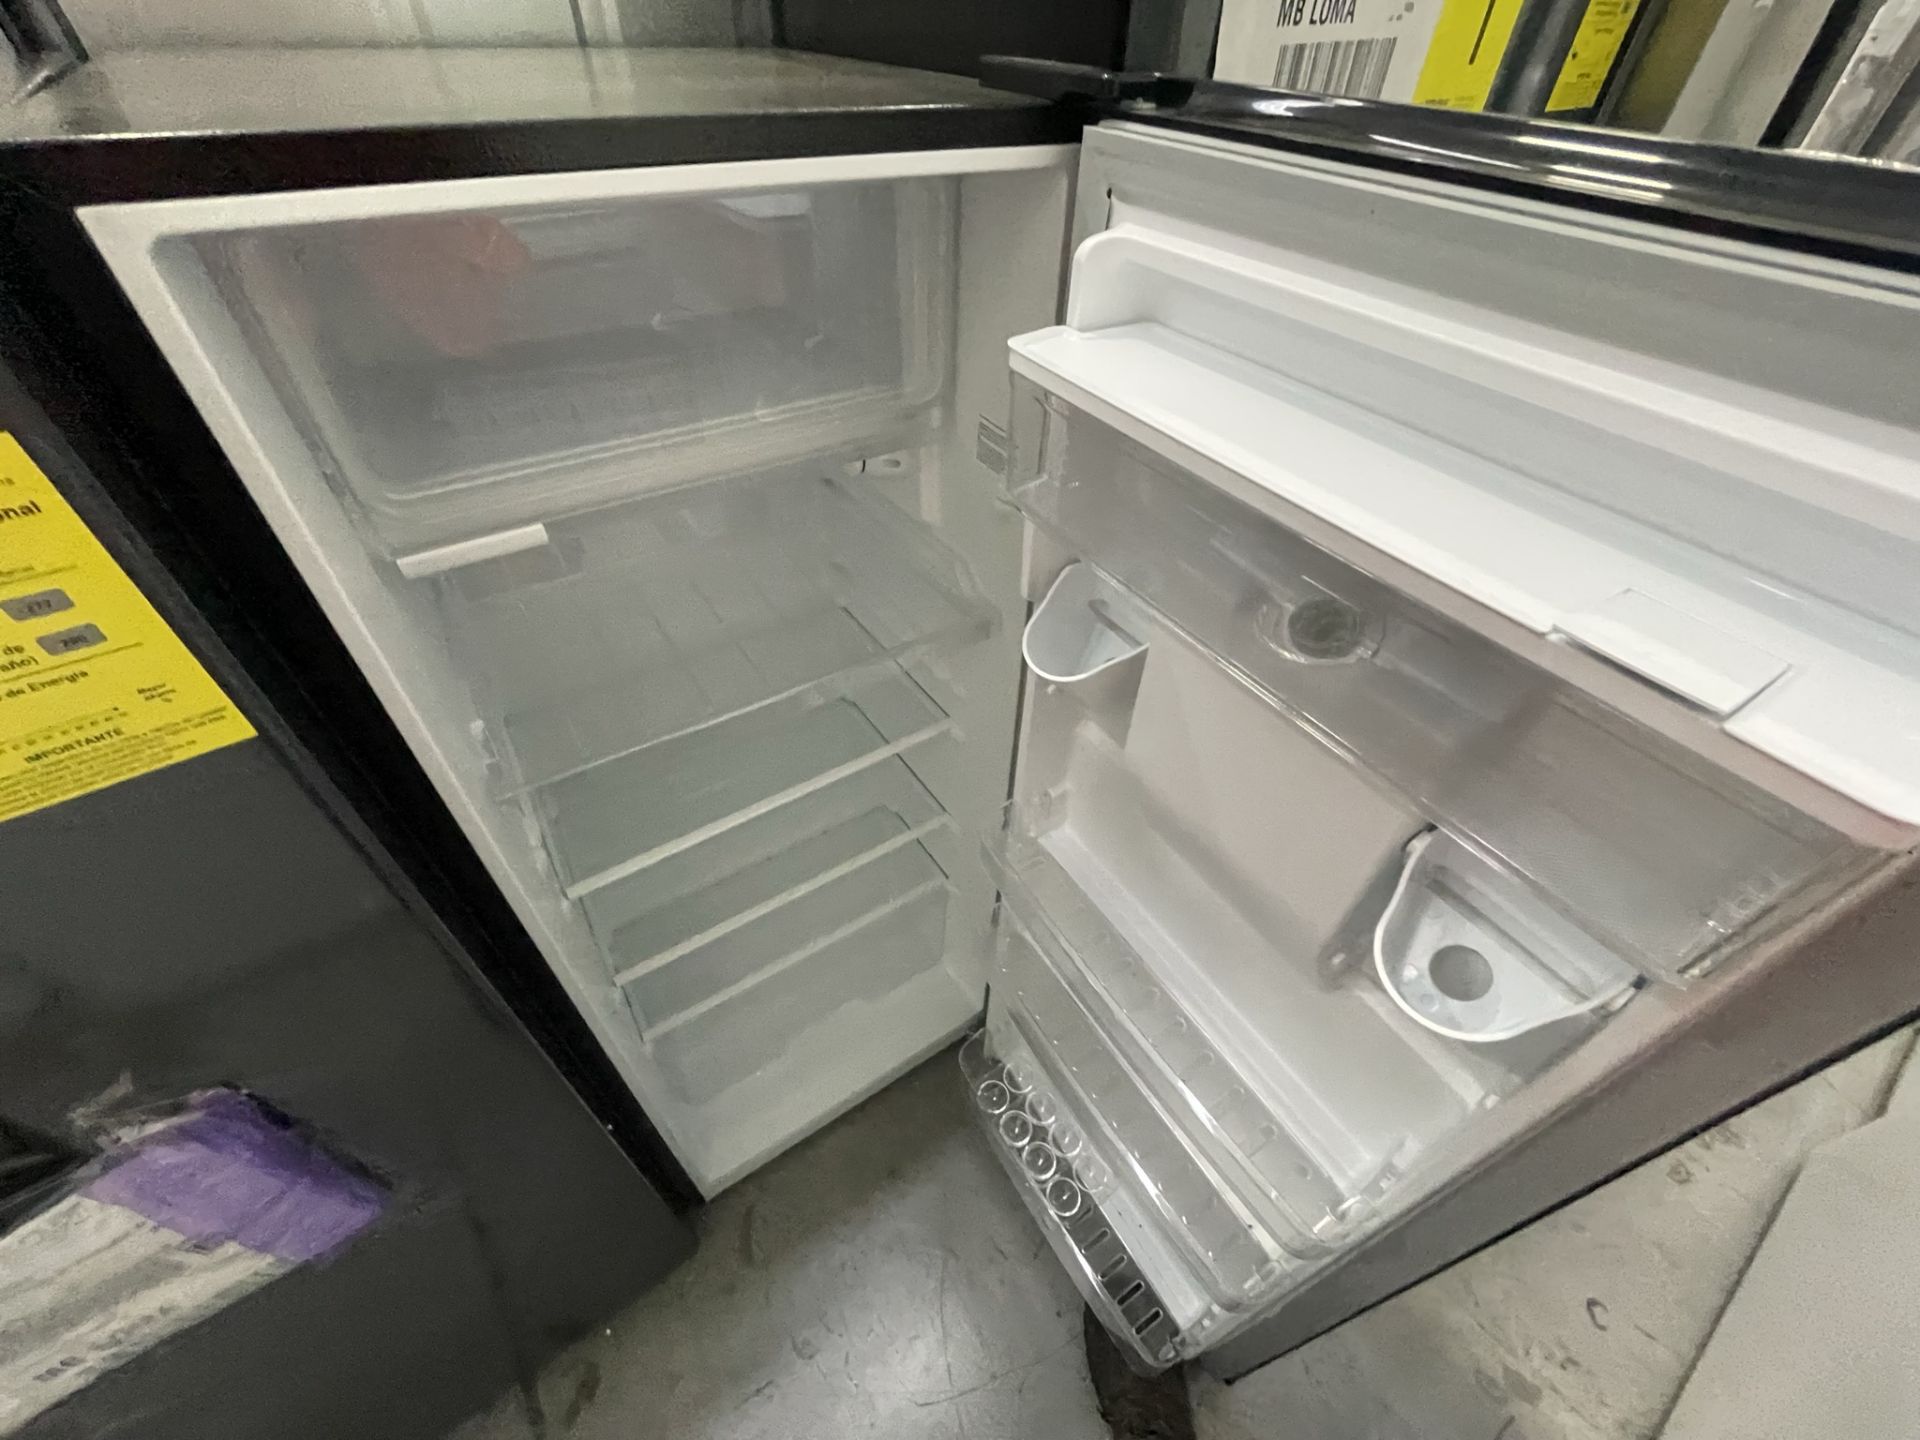 Lote de 2 Refrigeradores contiene: 1 Refrigerador Marca LG, Modelo GT24BS, Serie T1C953, Color Gris - Image 22 of 23